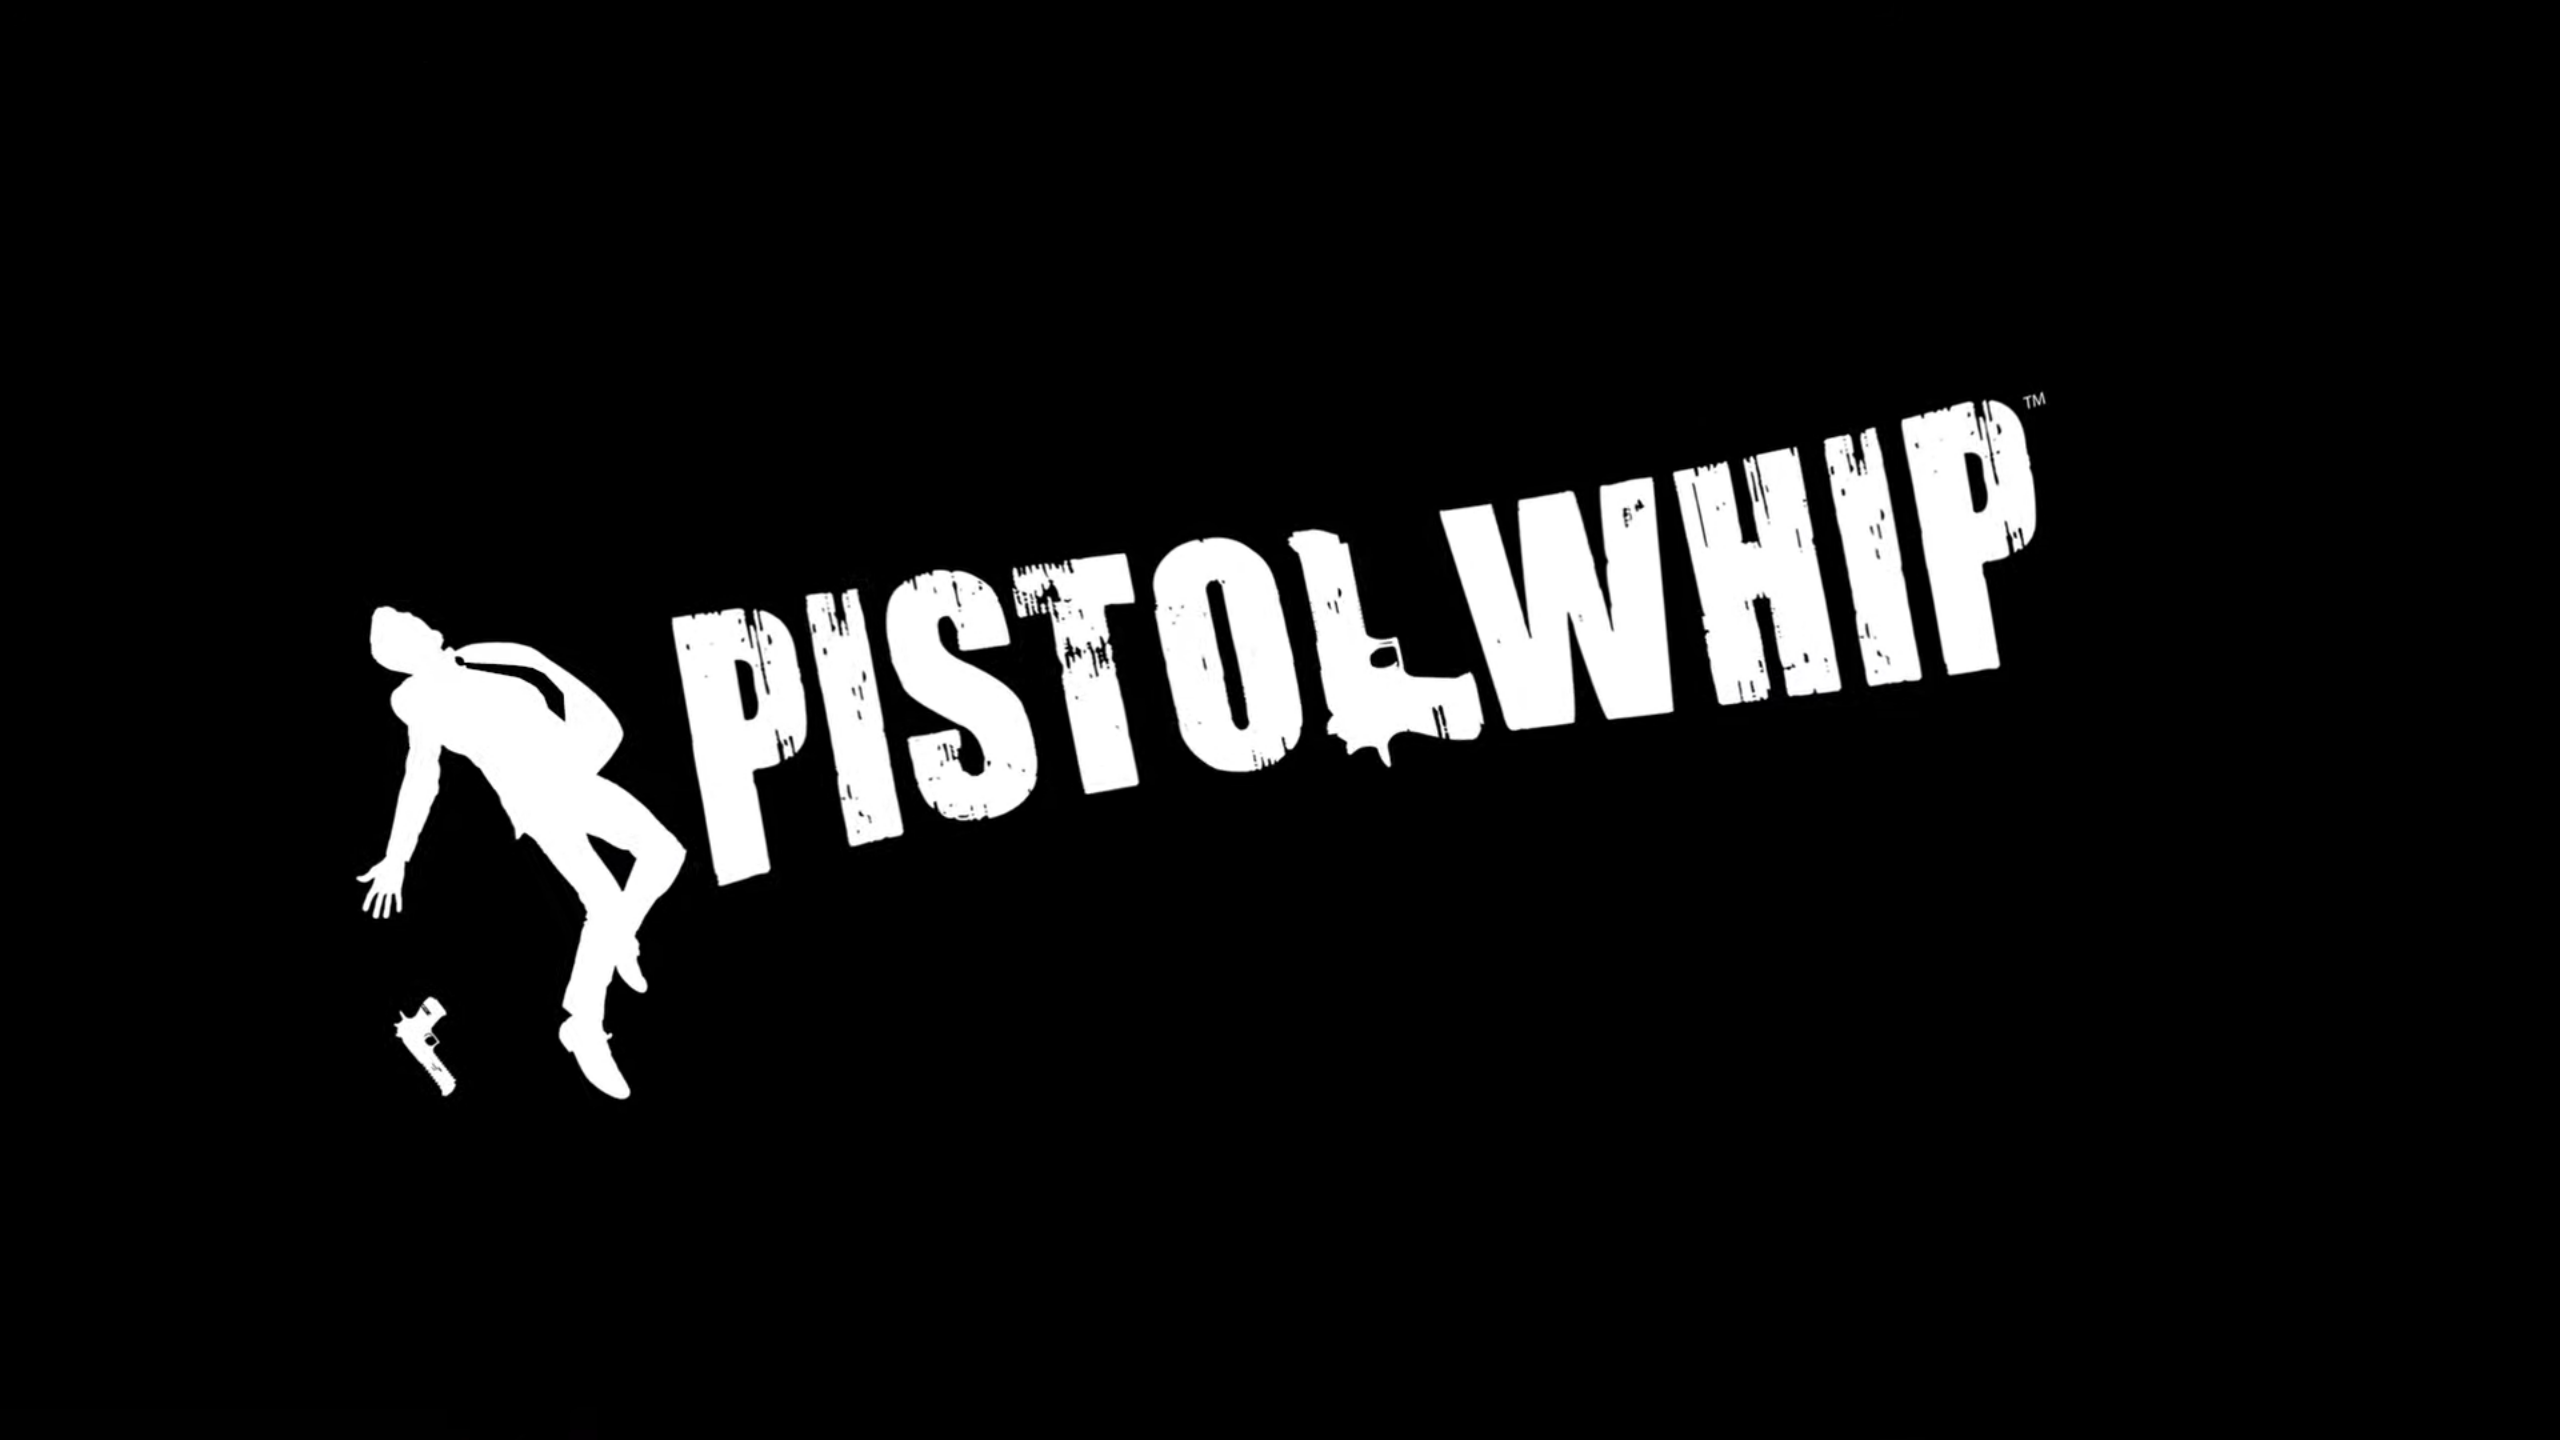 pistol whip vr review